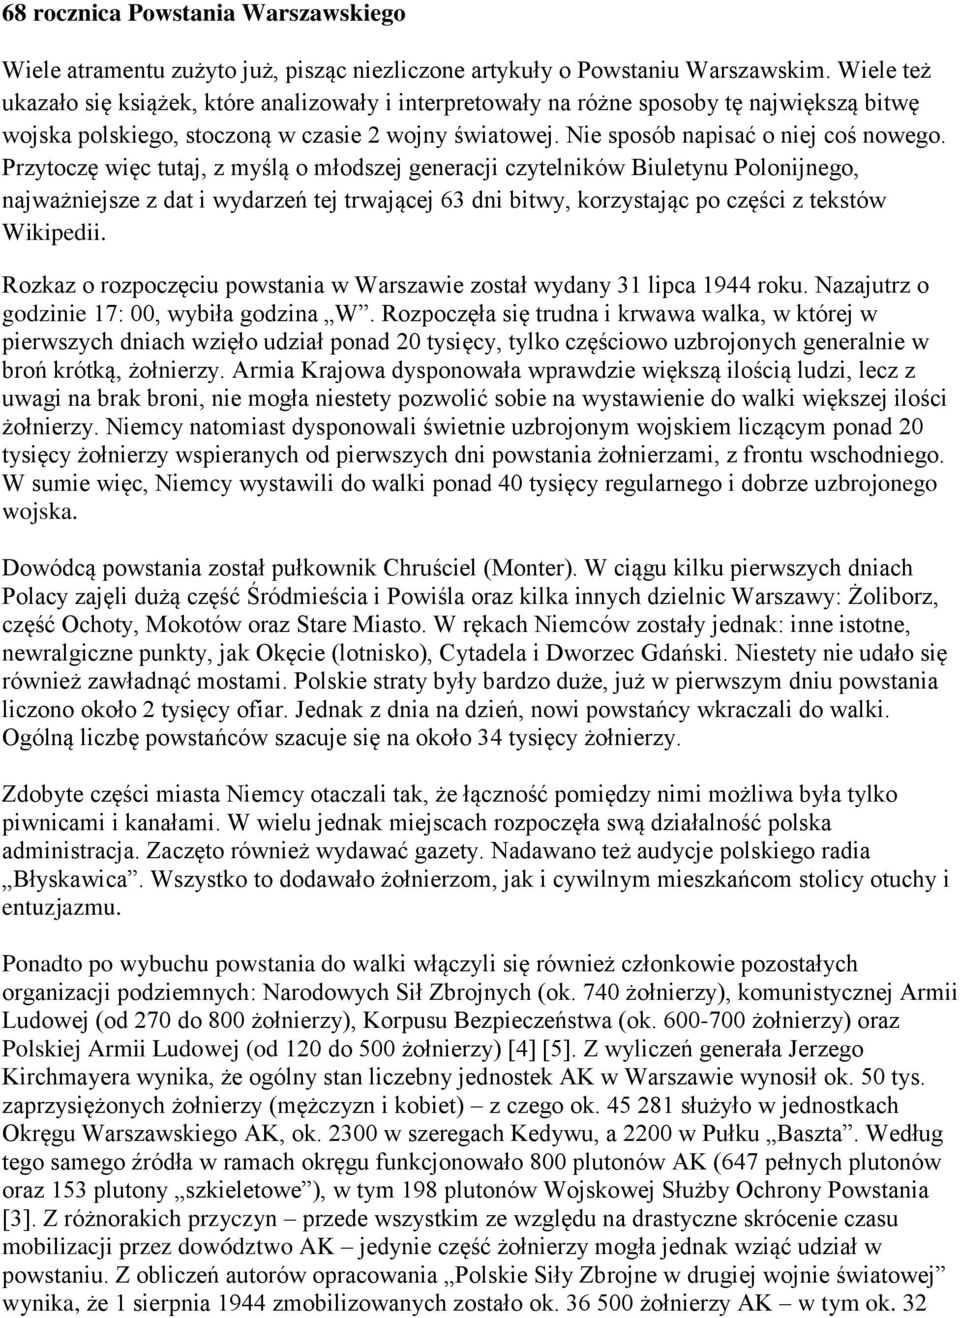 Przytoczę więc tutaj, z myślą o młodszej generacji czytelników Biuletynu Polonijnego, najważniejsze z dat i wydarzeń tej trwającej 63 dni bitwy, korzystając po części z tekstów Wikipedii.